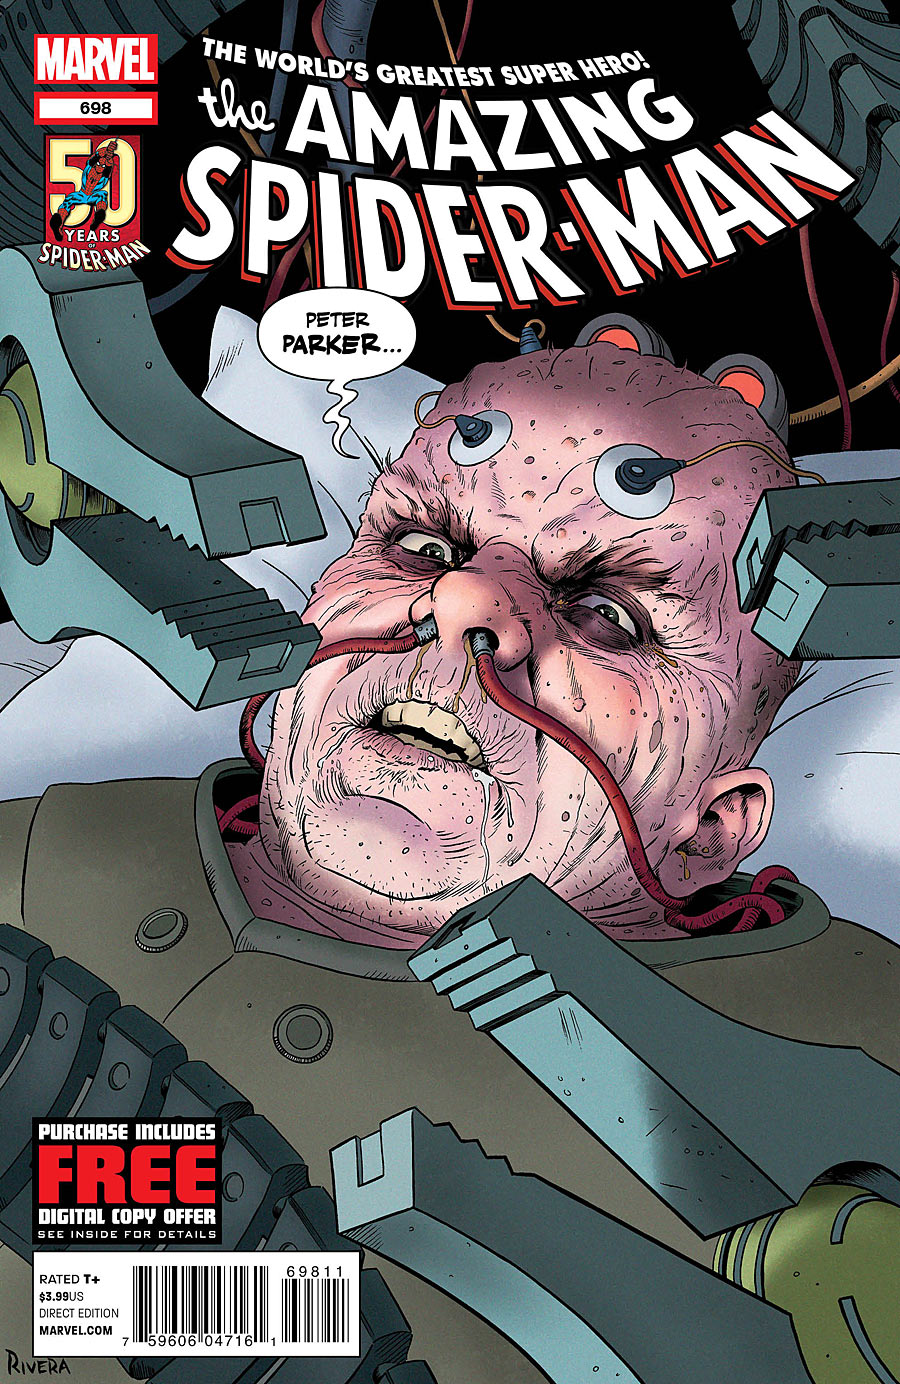 Amazing Spider-Man Vol. 1 #698